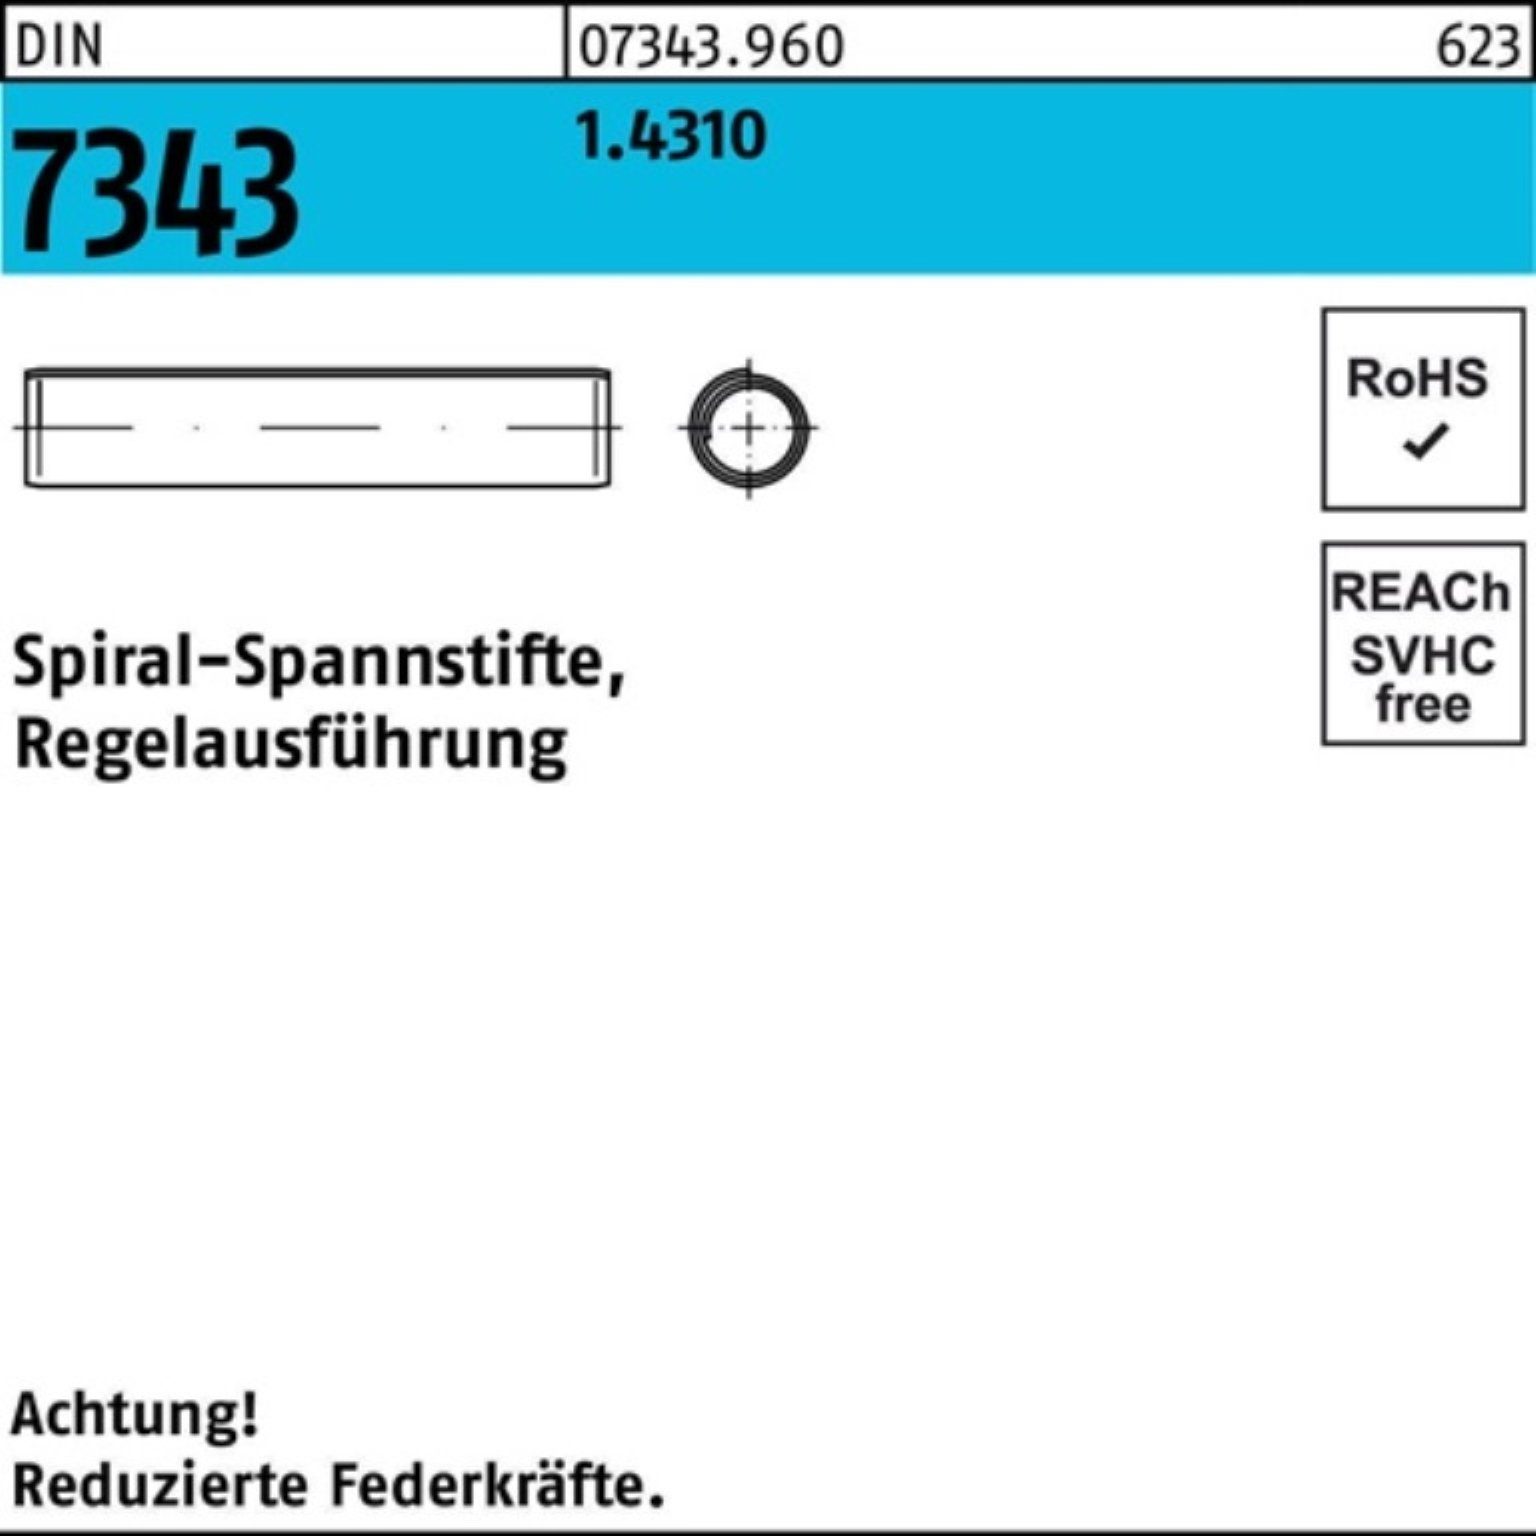 Reyher Spannstift 1000er Spiralspannstift Pack 7343/ISO DIN 1.4310 Regelausf. 8750 2x 8